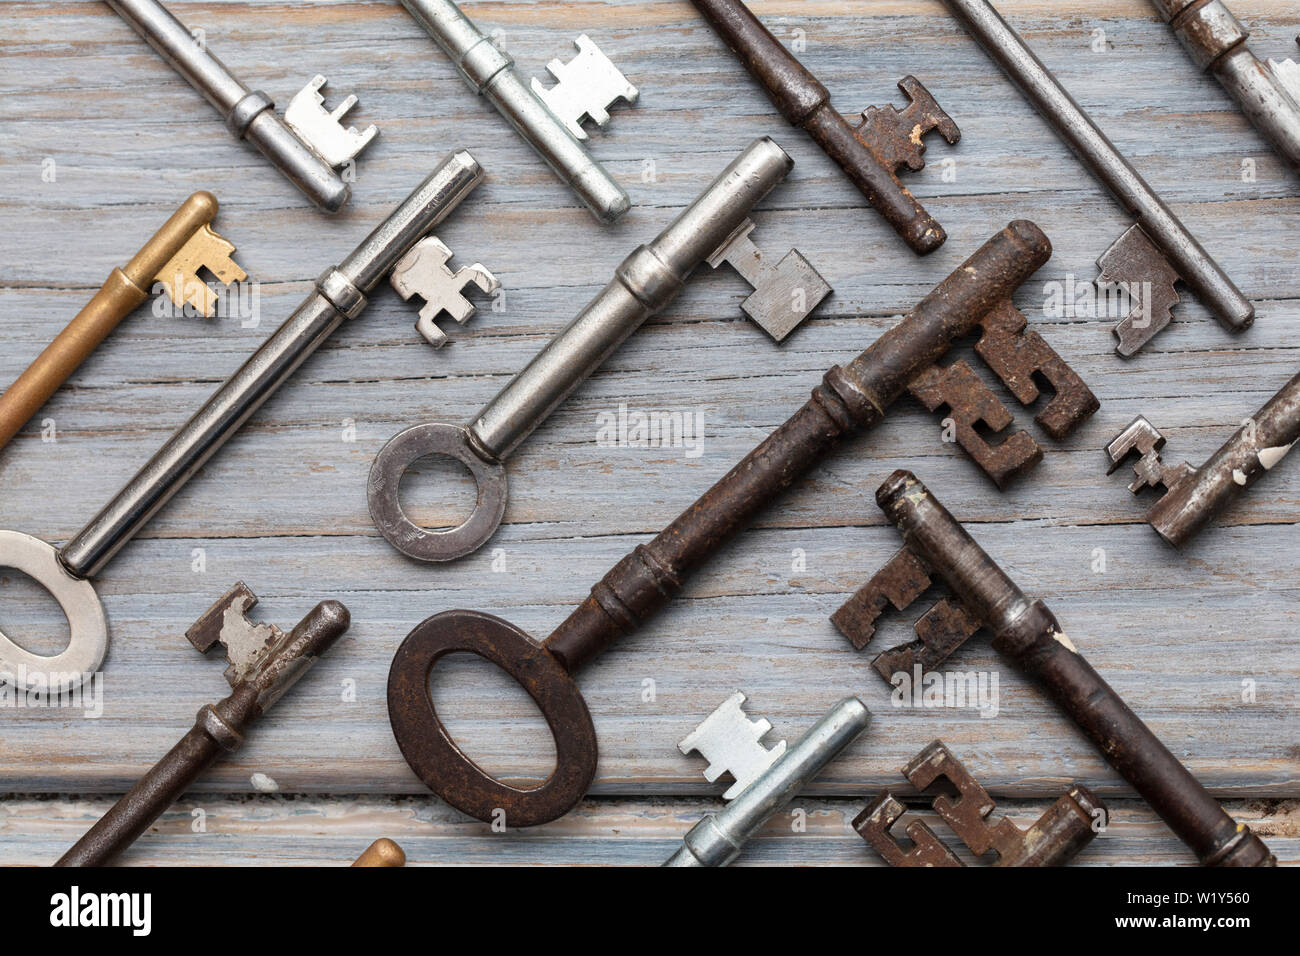 Vintage old fashioned keys sur un fond de bois rustique. Concept de sécurité Banque D'Images